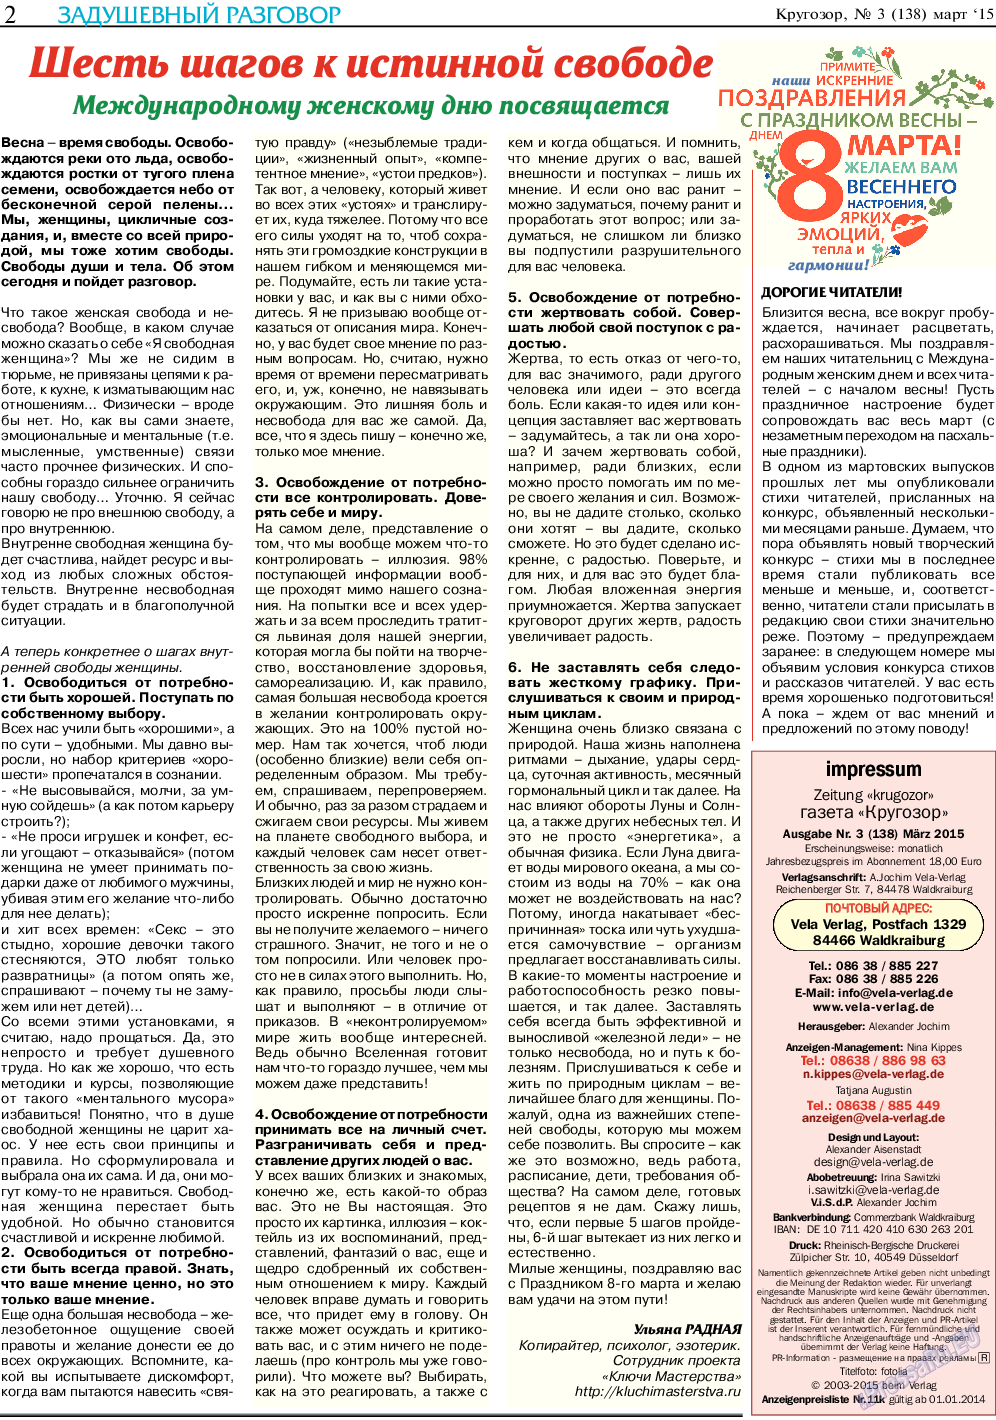 Кругозор, газета. 2015 №3 стр.2